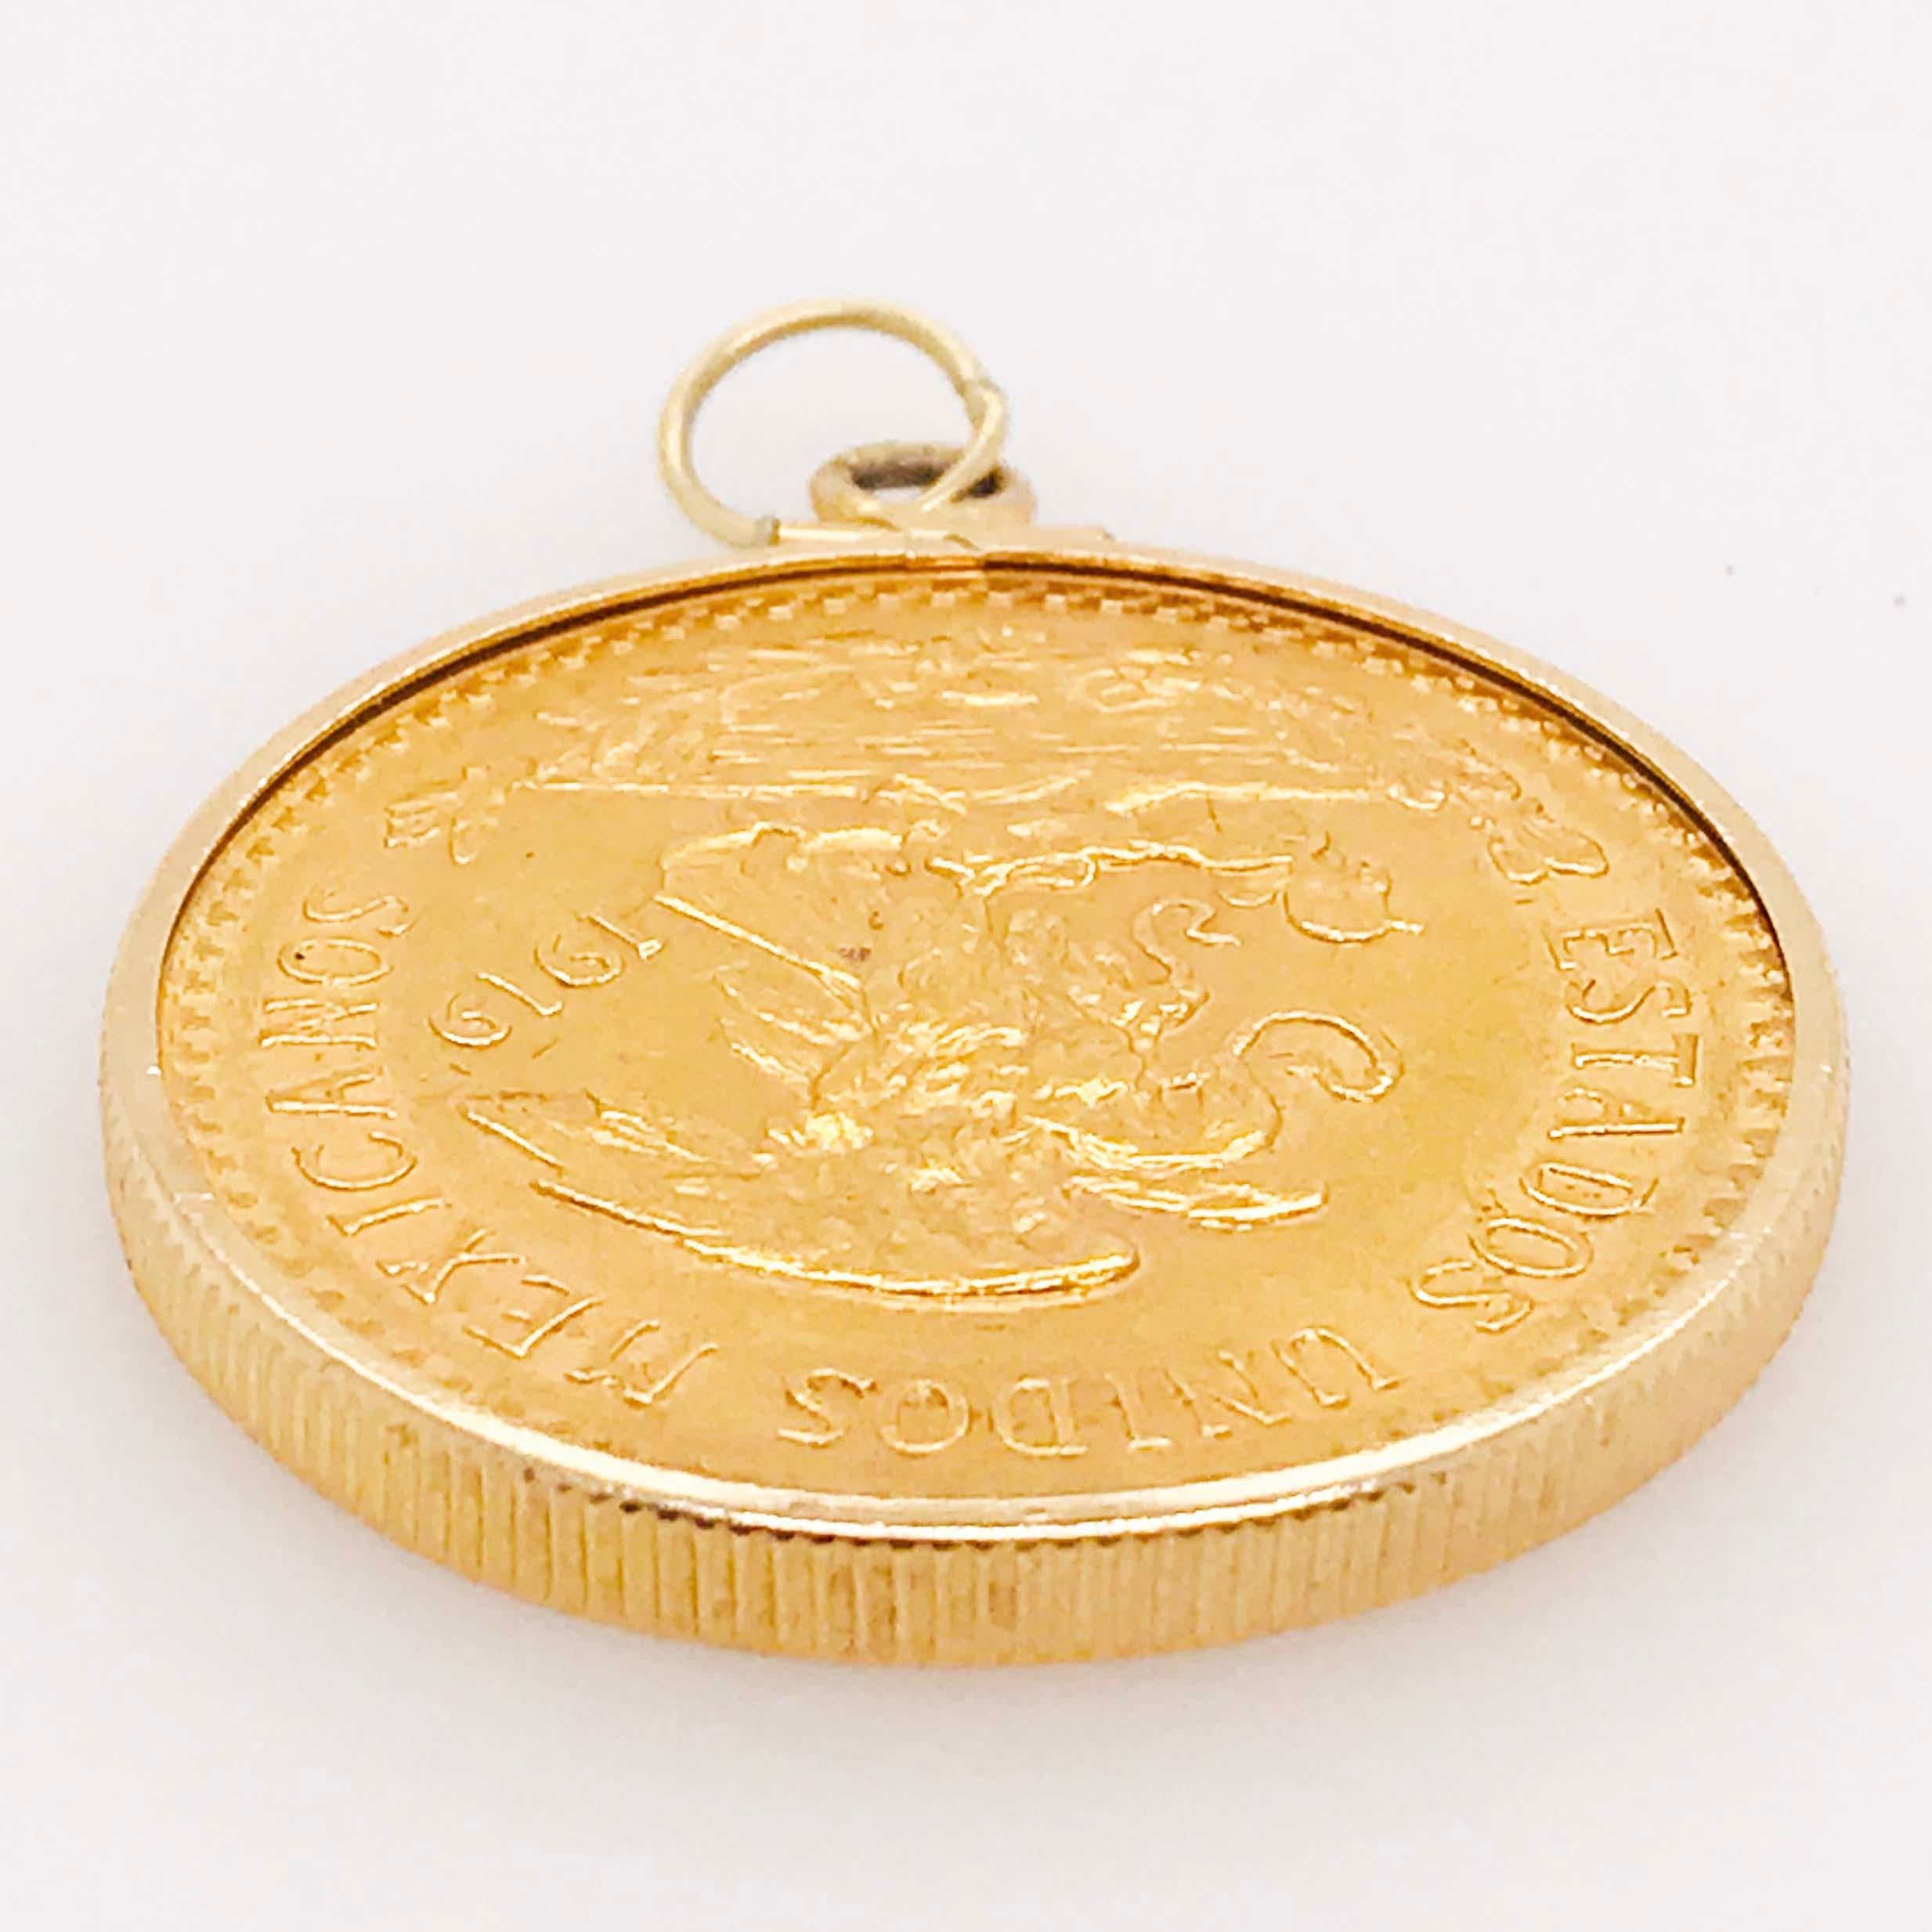 20 pesos gold coin pendant